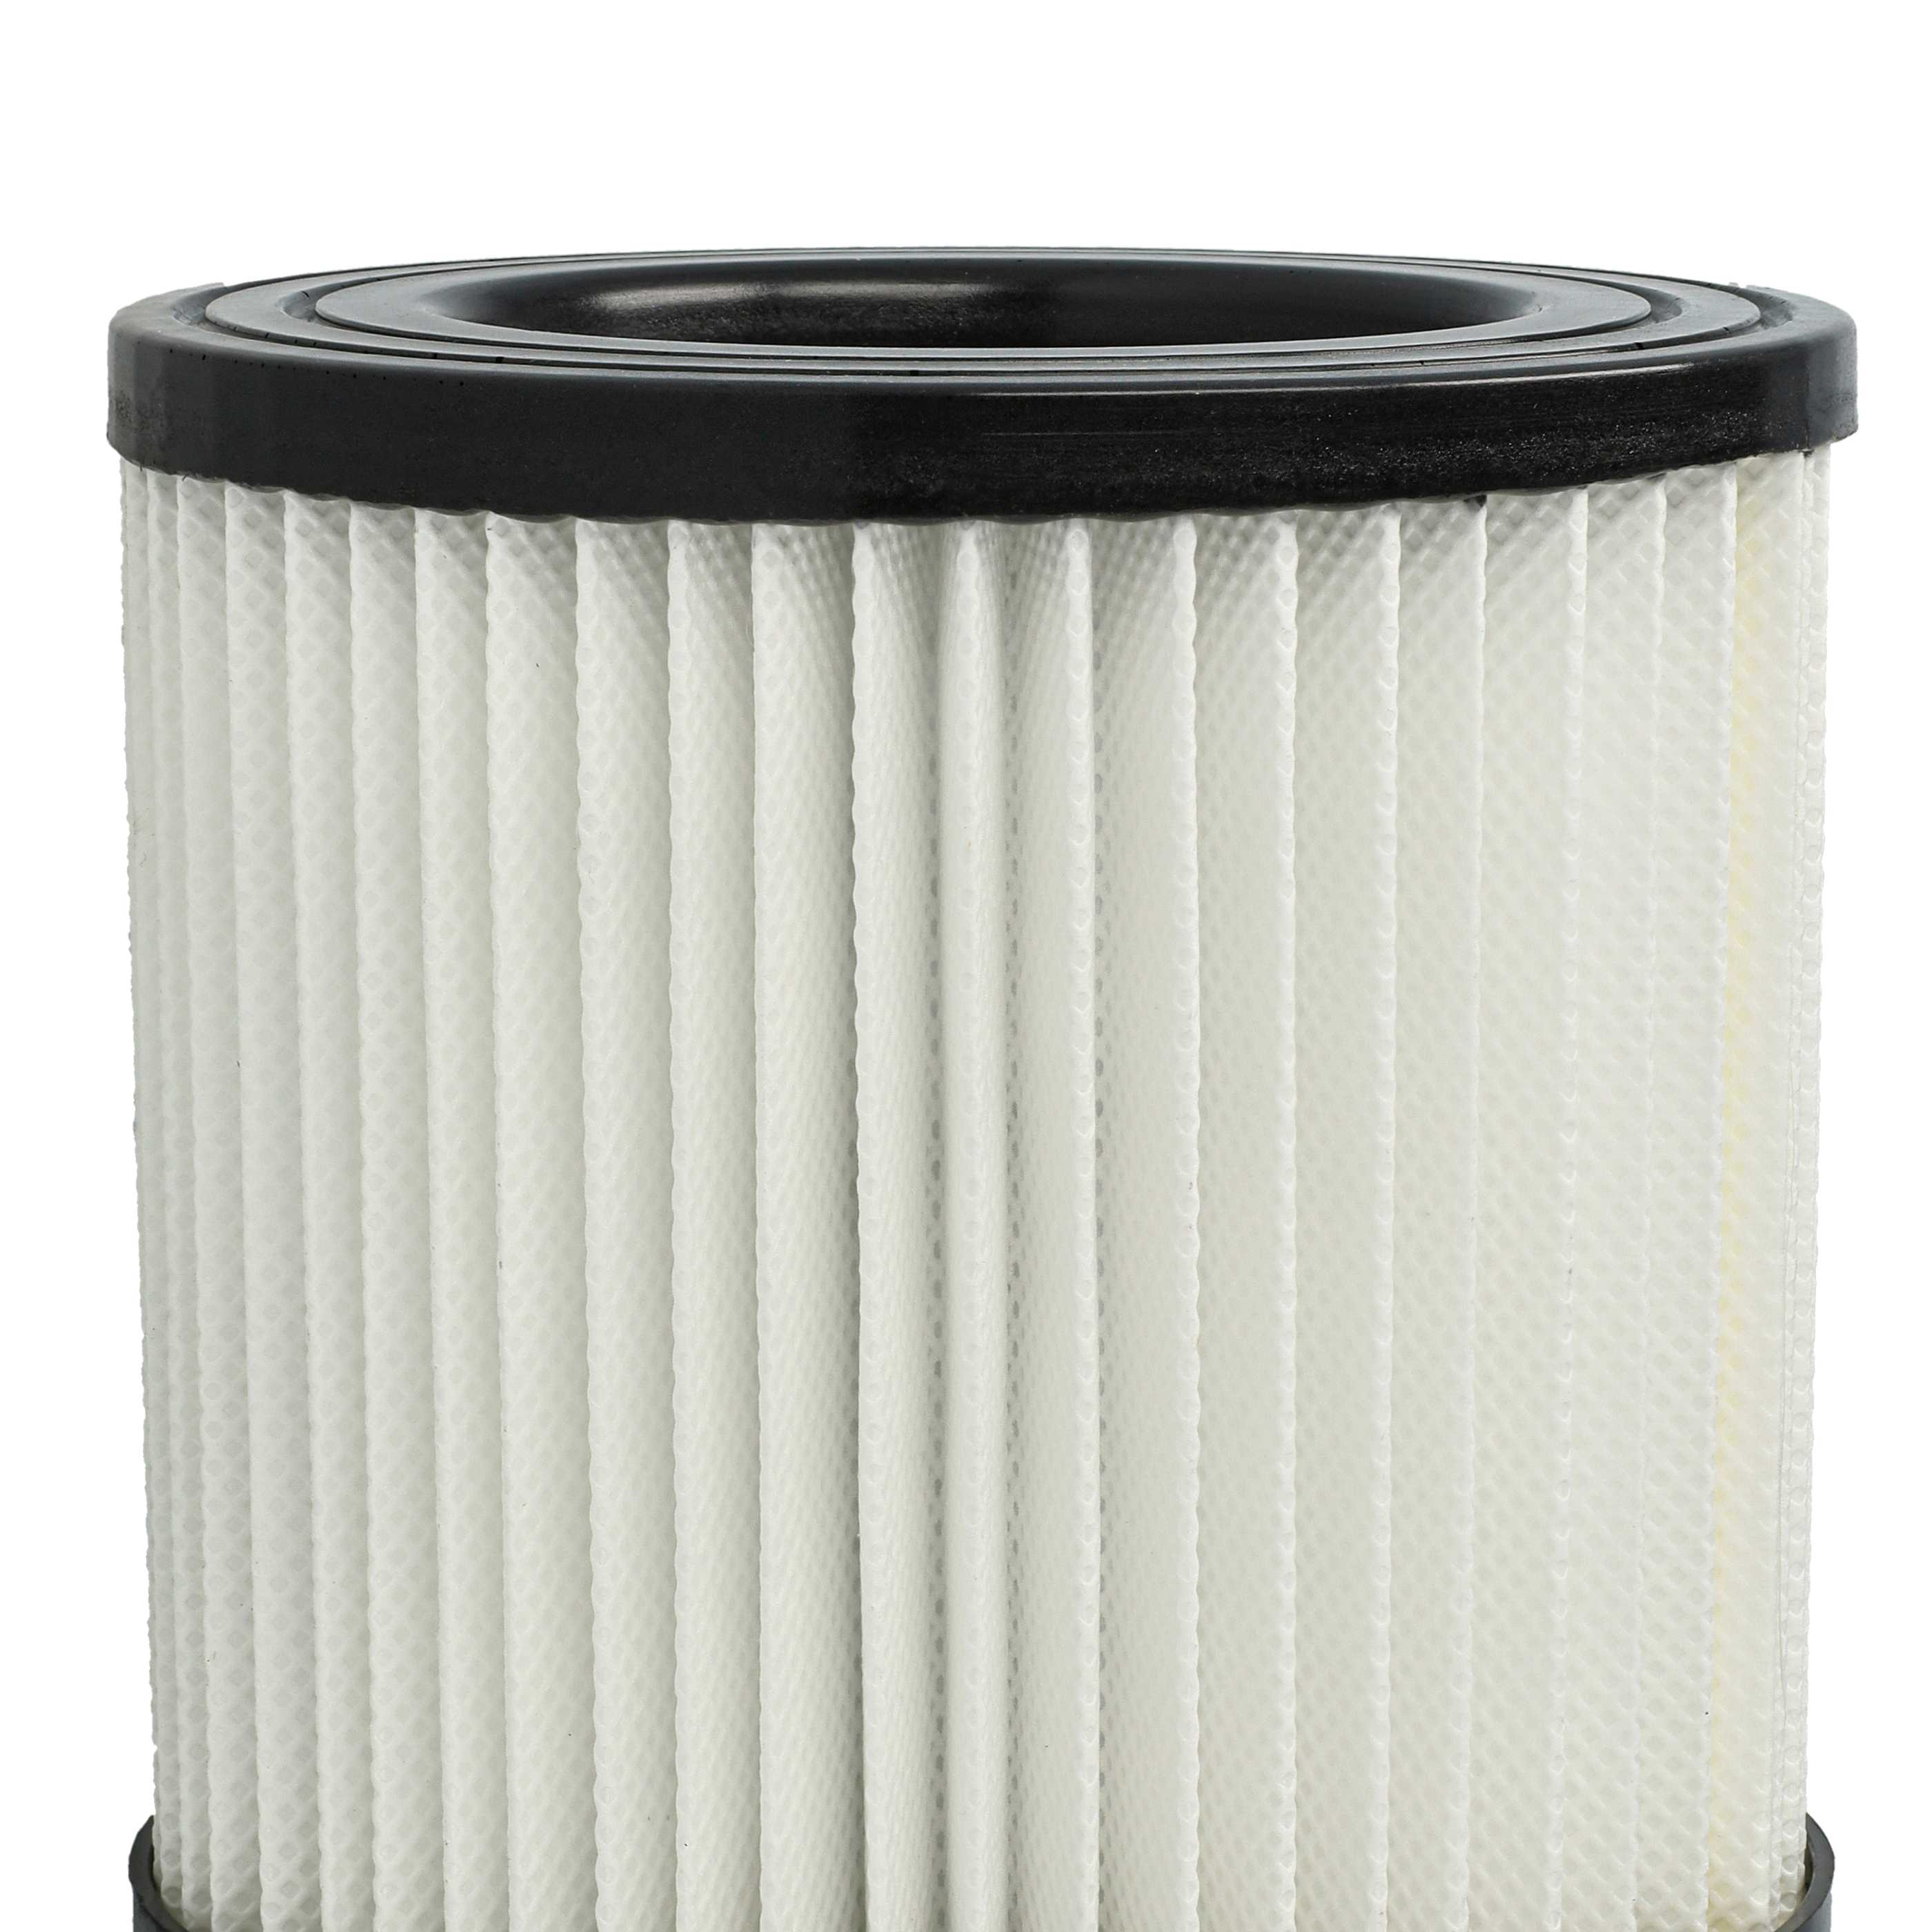 3x Filtres remplace Scheppach 7907702702 pour aspirateur - filtre HEPA